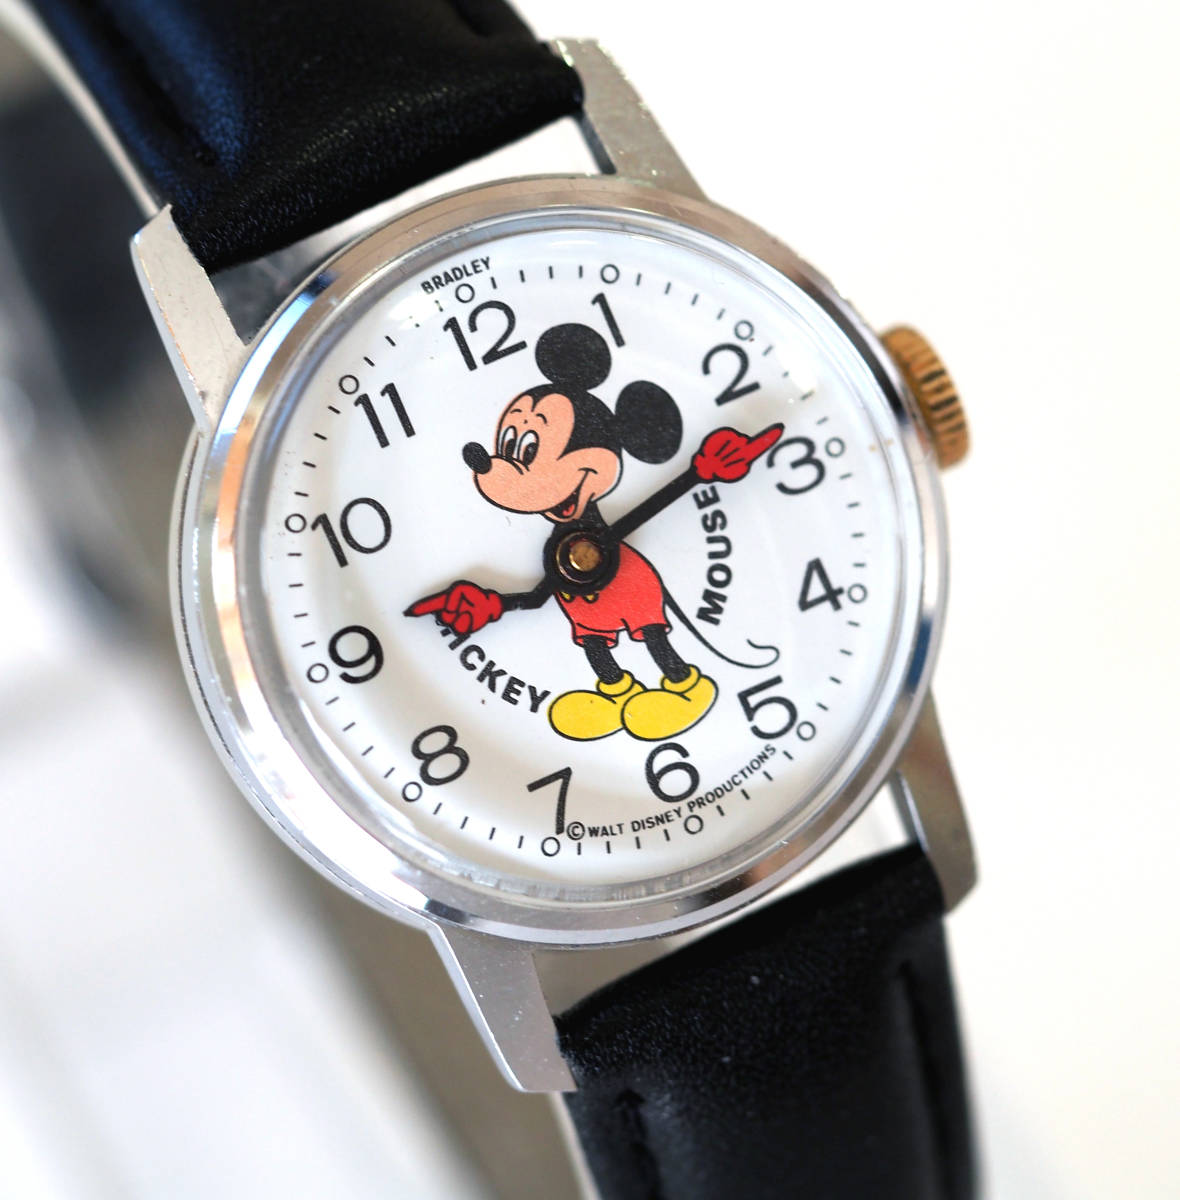  полное обслуживание работа Mickey Mouse автоматический механический завод наручные часы новый товар ремень редкий прекрасный товар 1970 годы Disney BRADLEYb Lad Ray boys b Lad Lee 